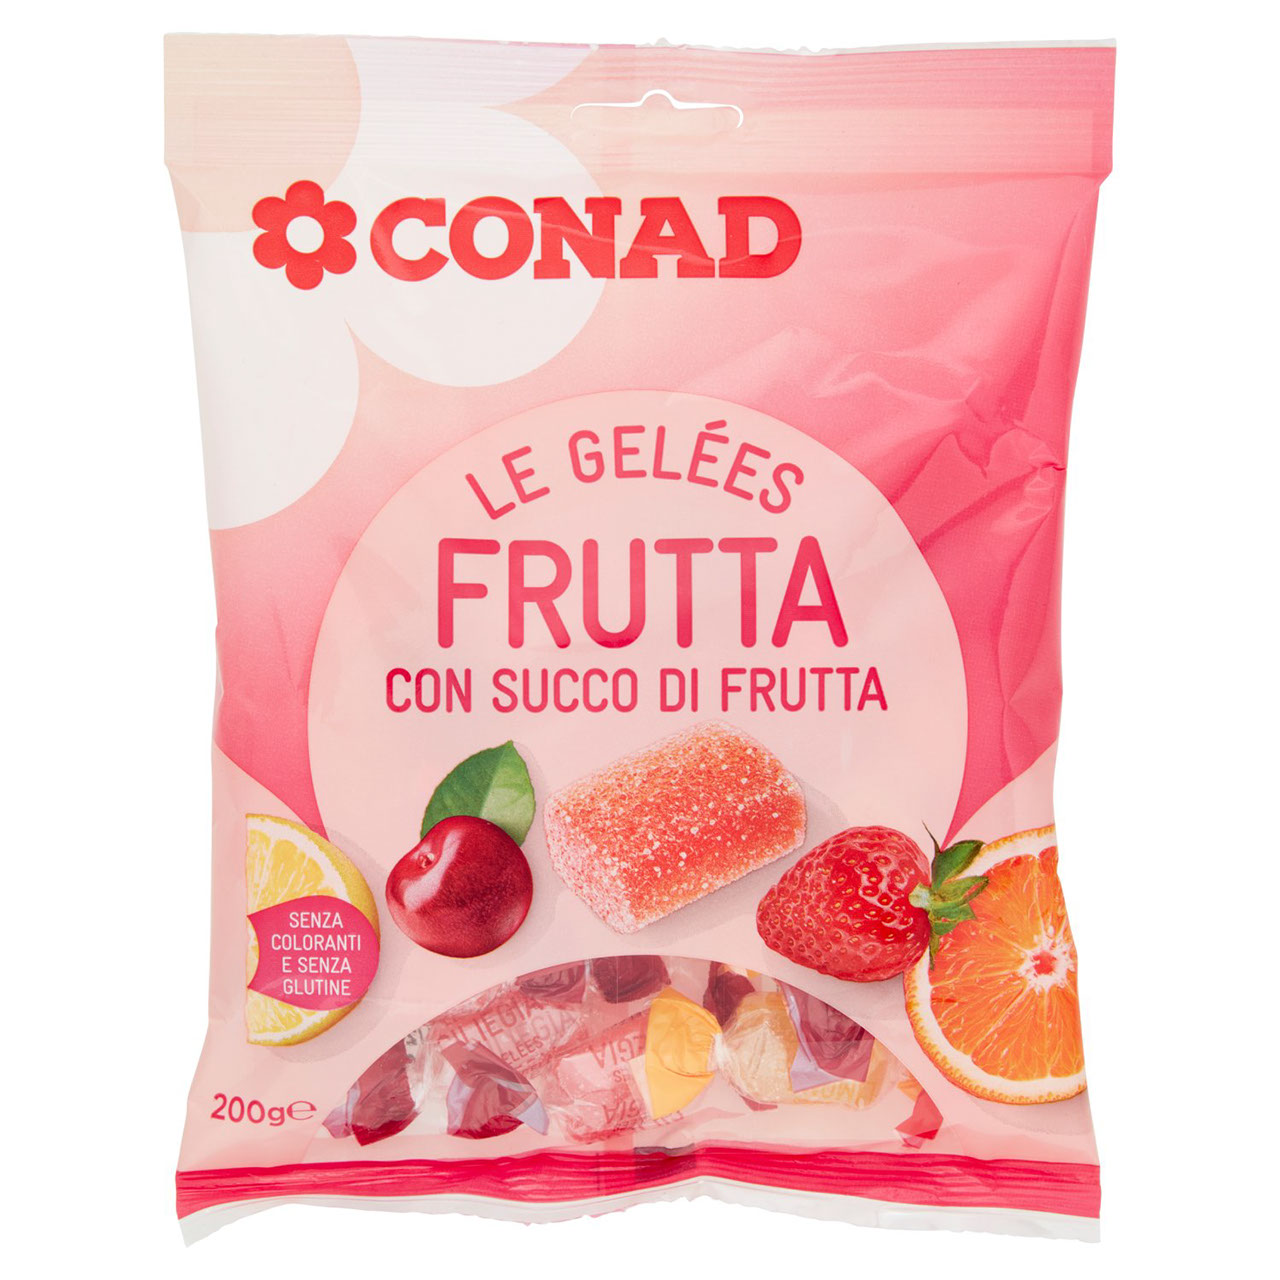 Gelées Gusto Frutta Conad in vendita online